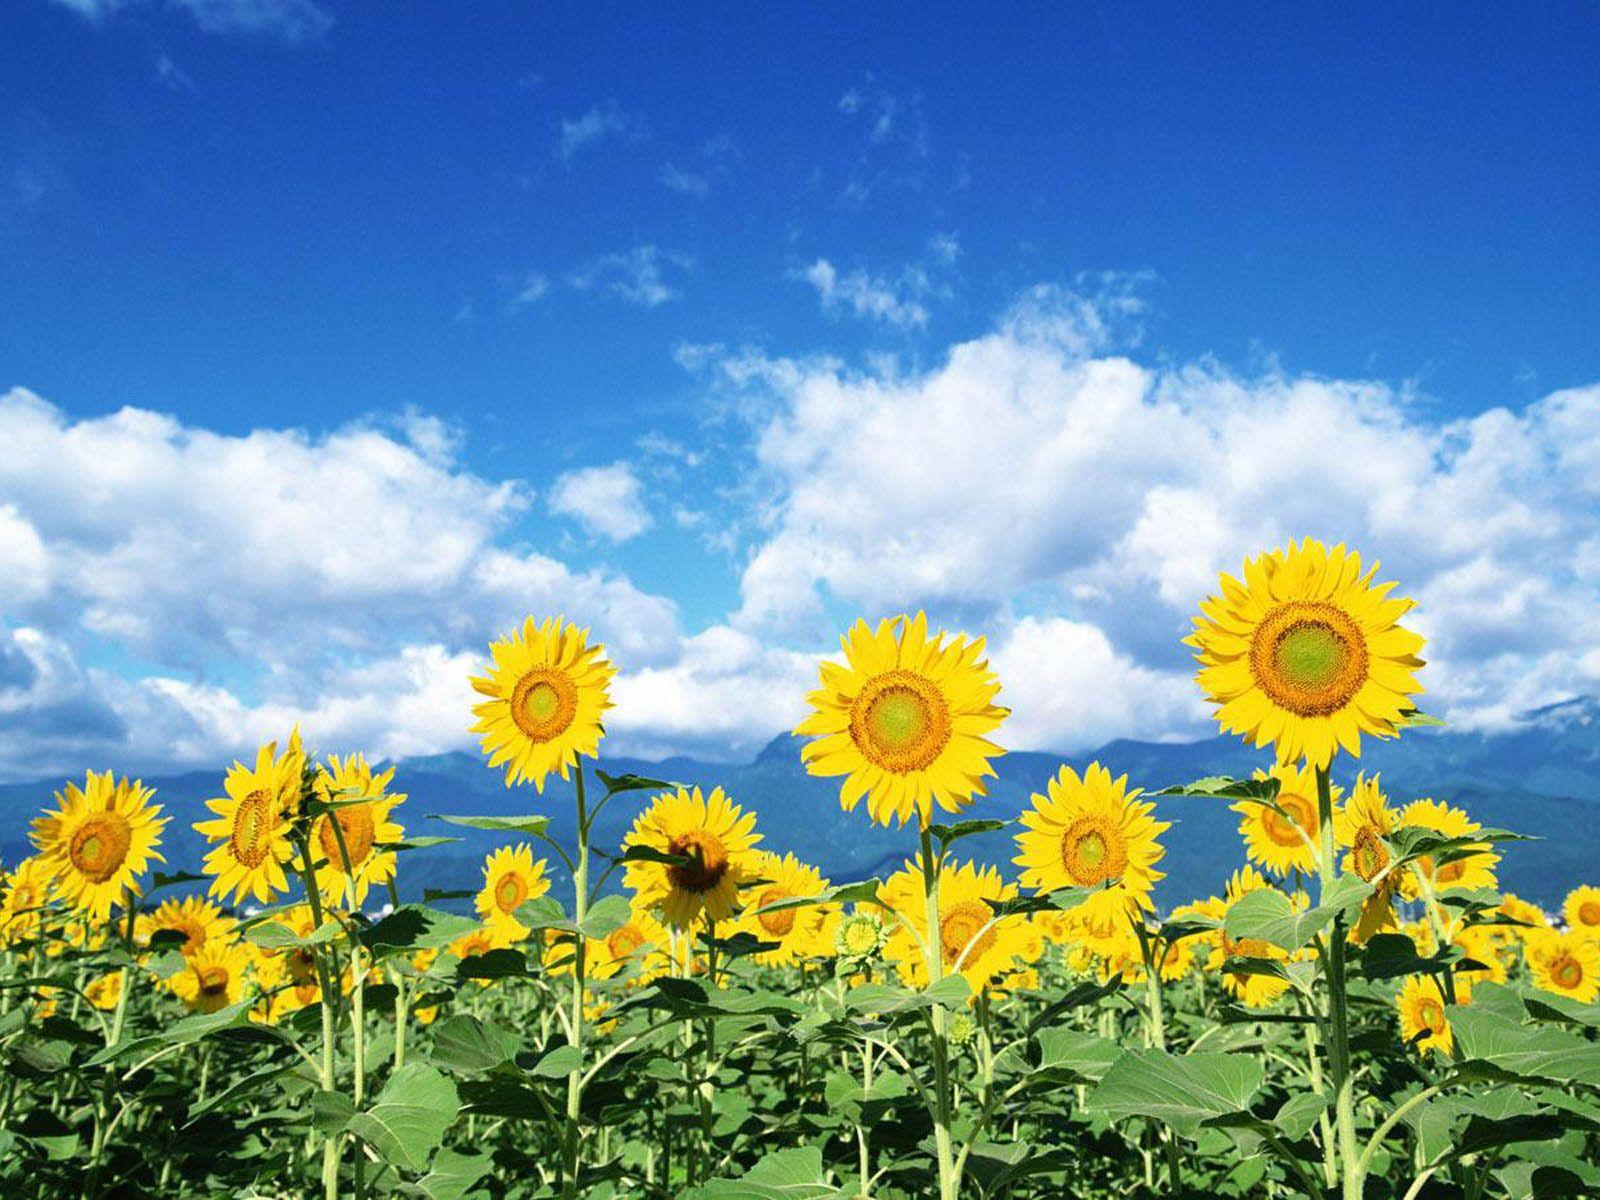 sunflower field wallpaper desktop